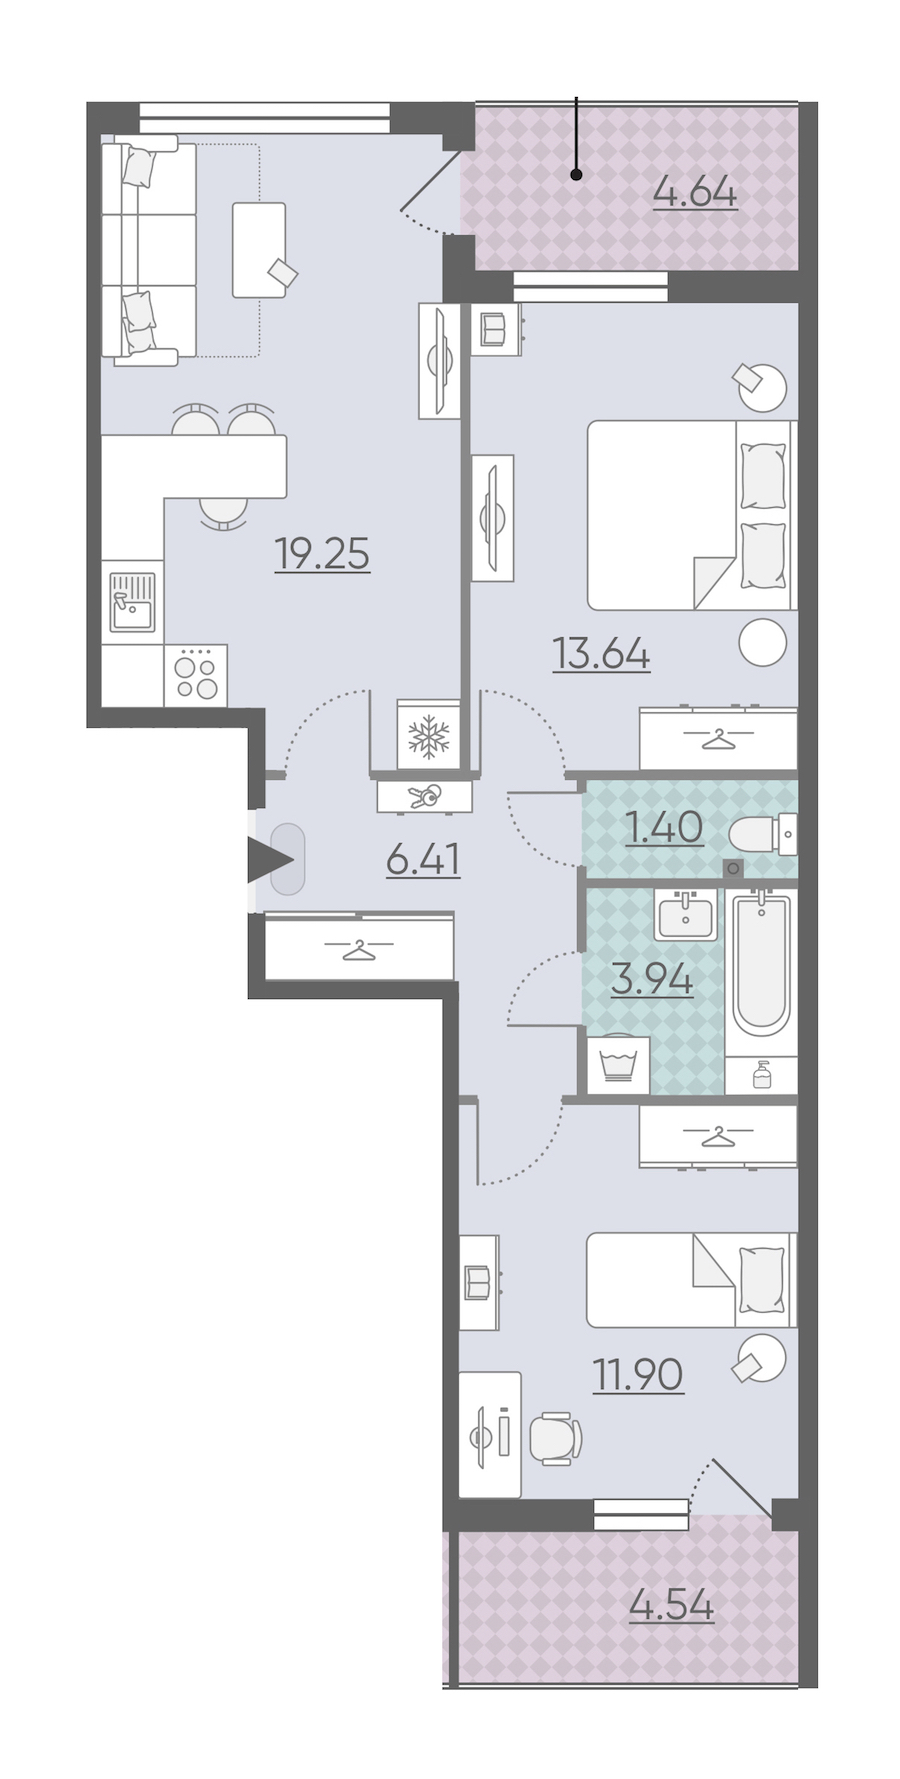 Двухкомнатная квартира в : площадь 61.13 м2 , этаж: 2 – купить в Санкт-Петербурге